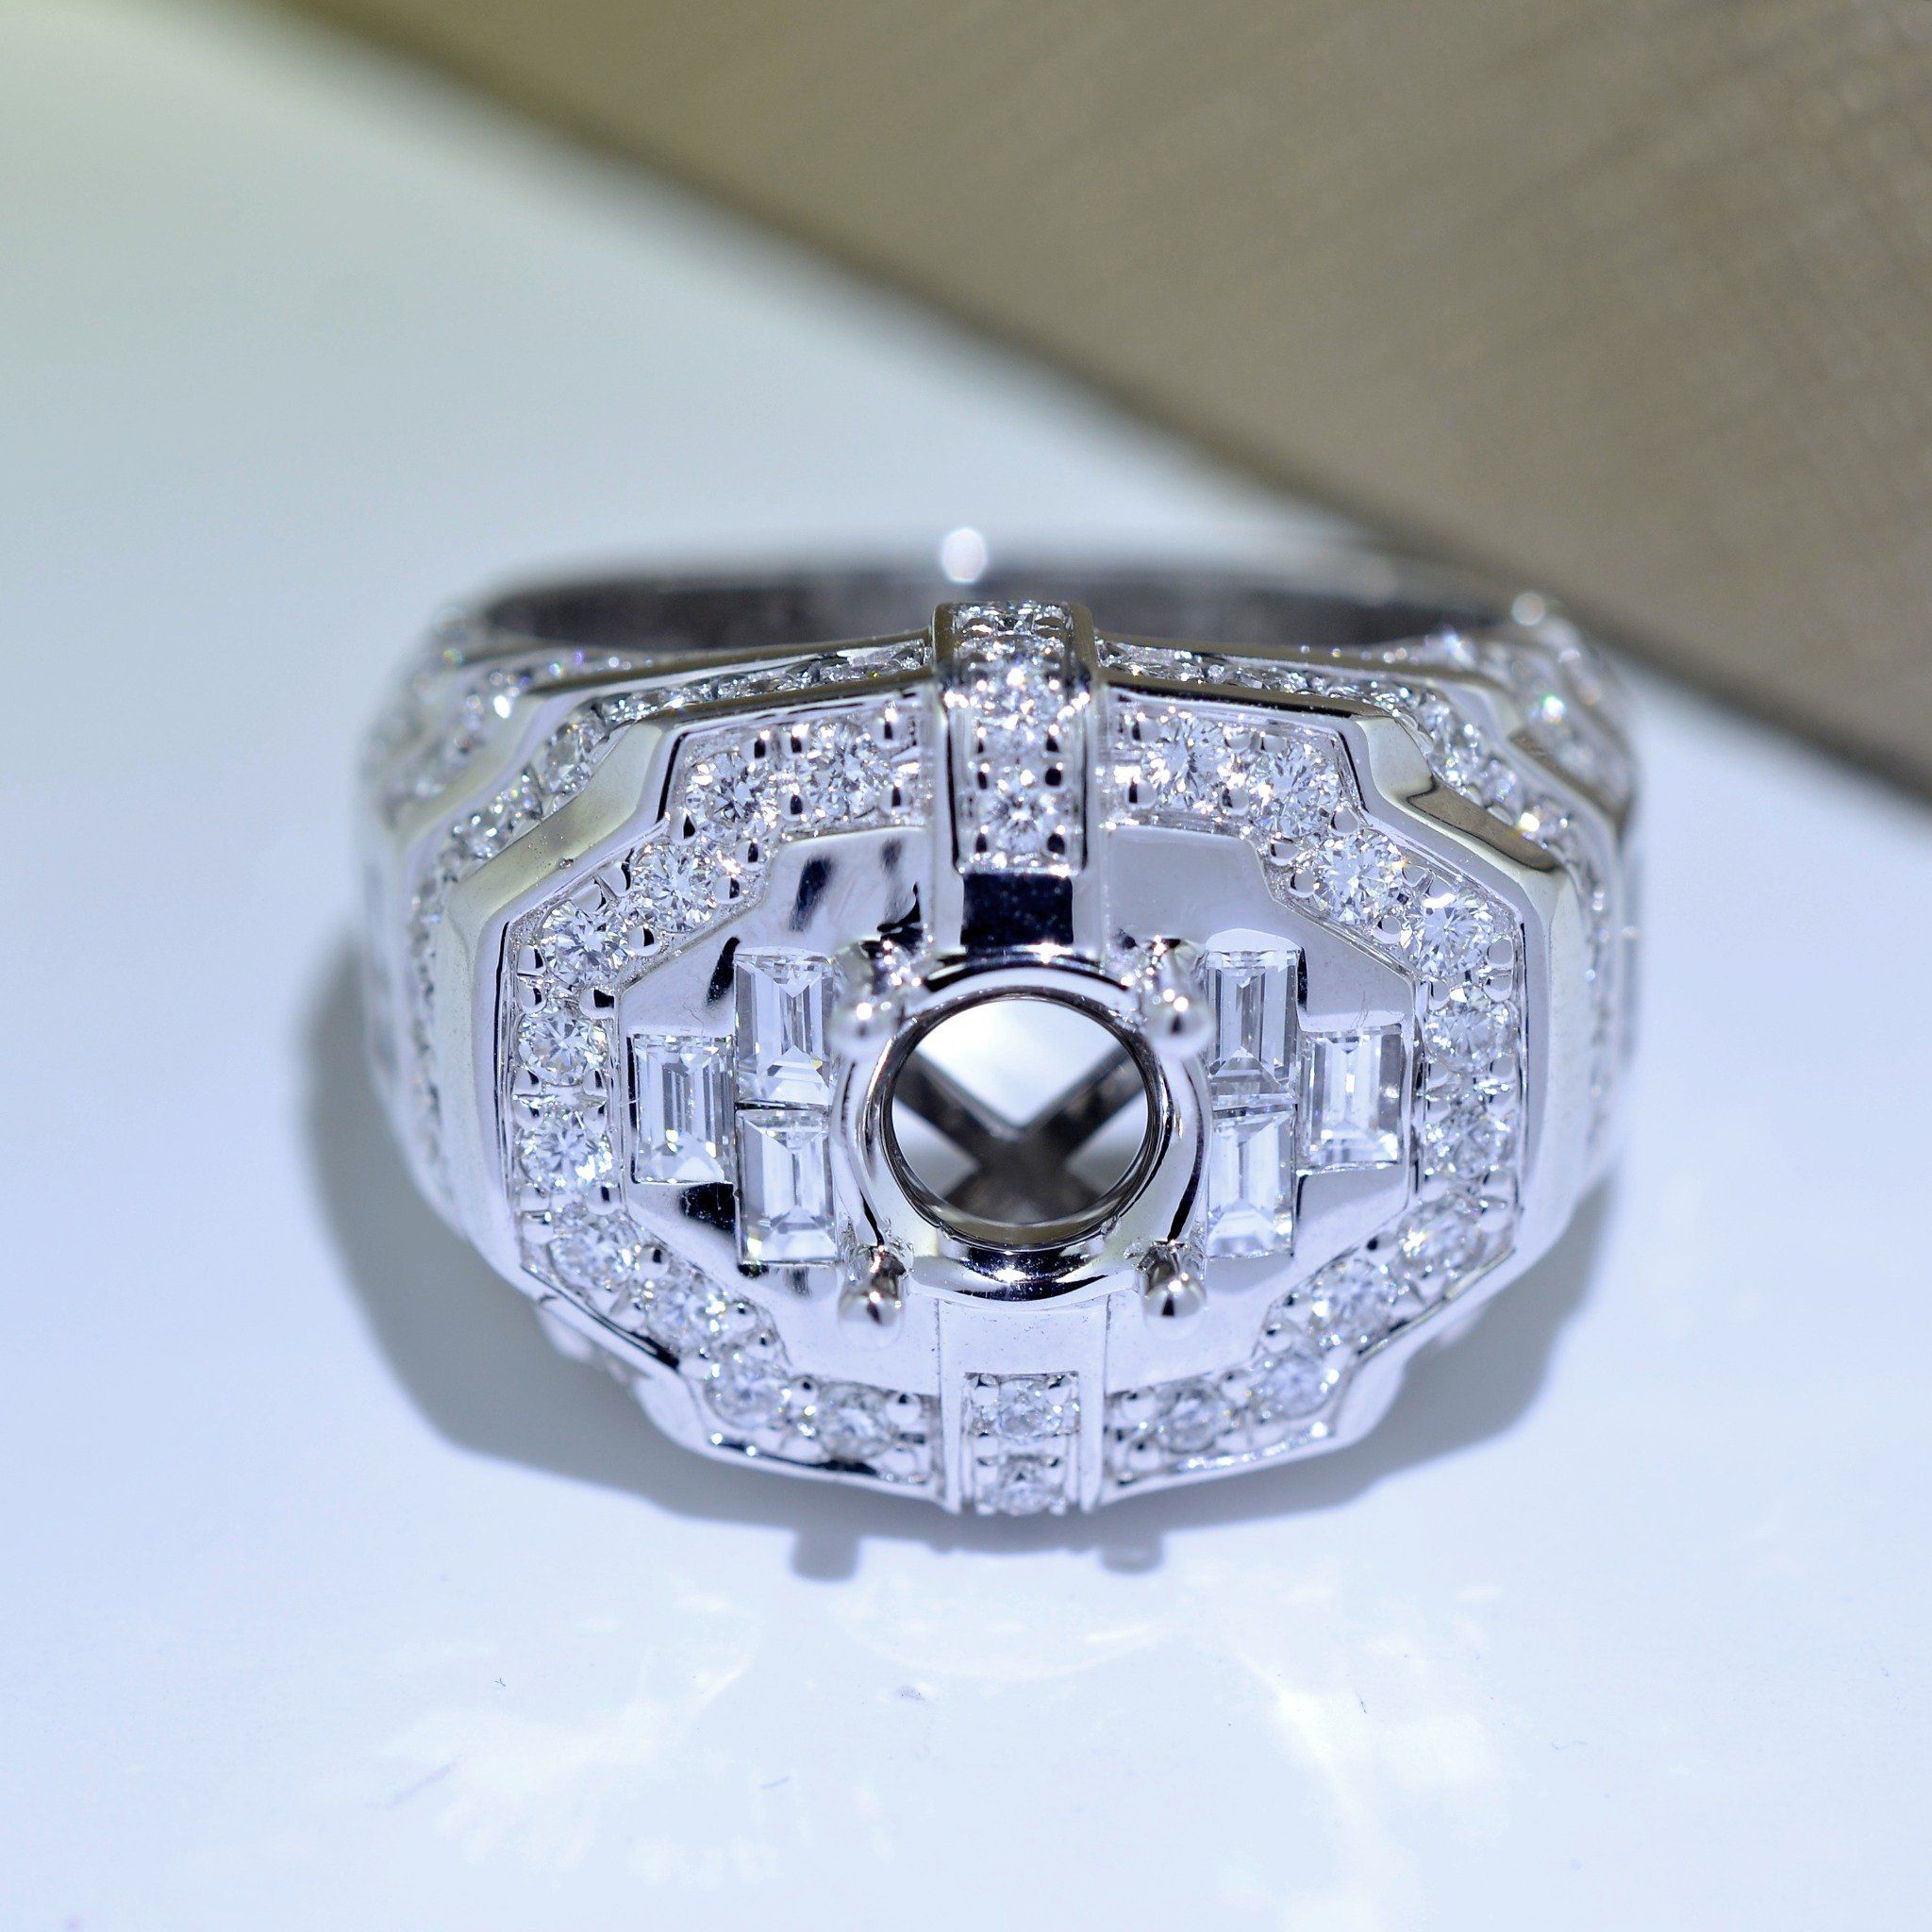  MALE DIAMOND RING 122617 6.4MM (NHẪN NAM KIM CƯƠNG 122617 Ổ CHỦ 6.4LI) 